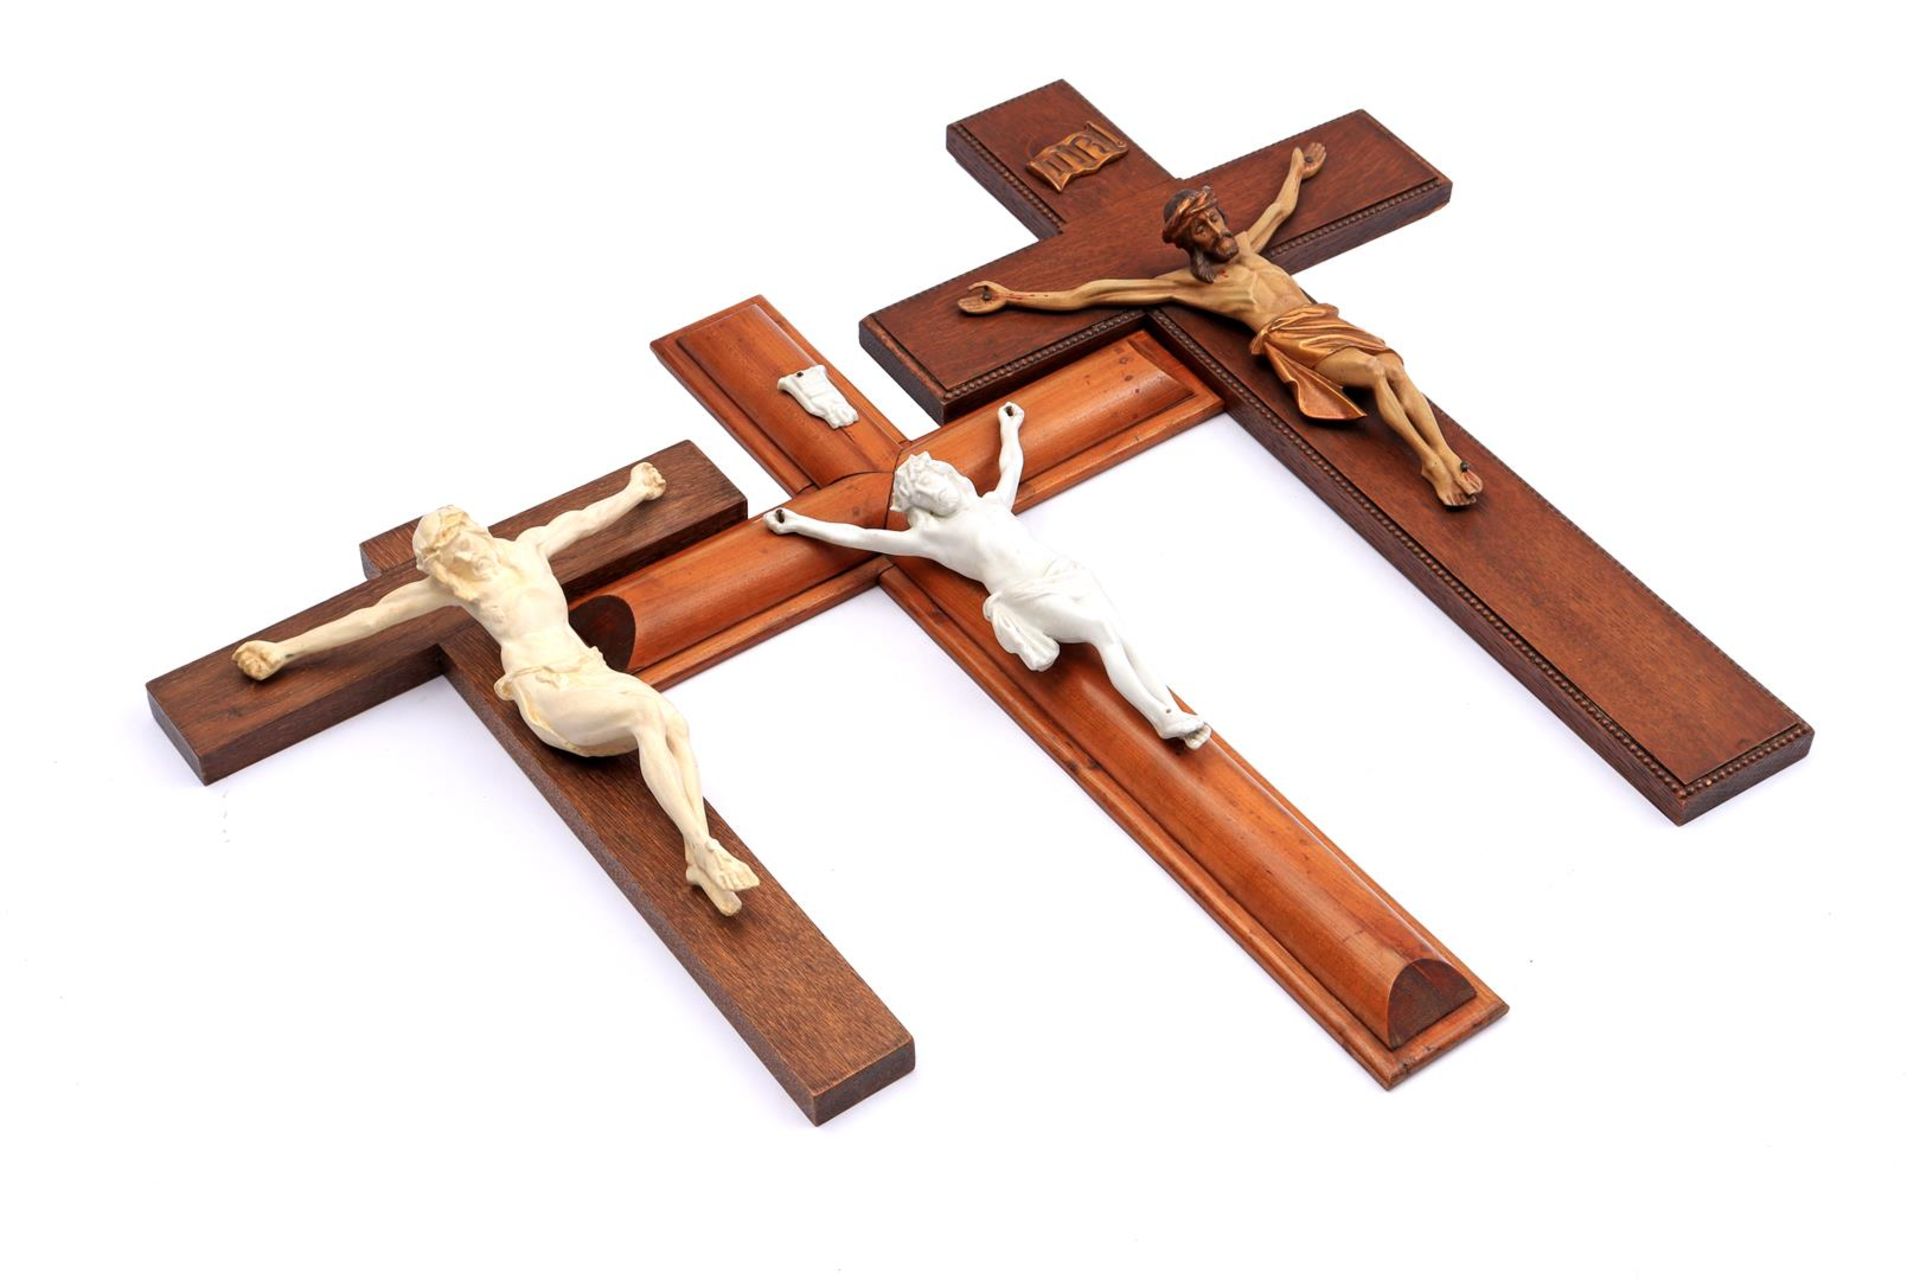 3 various crucifixes